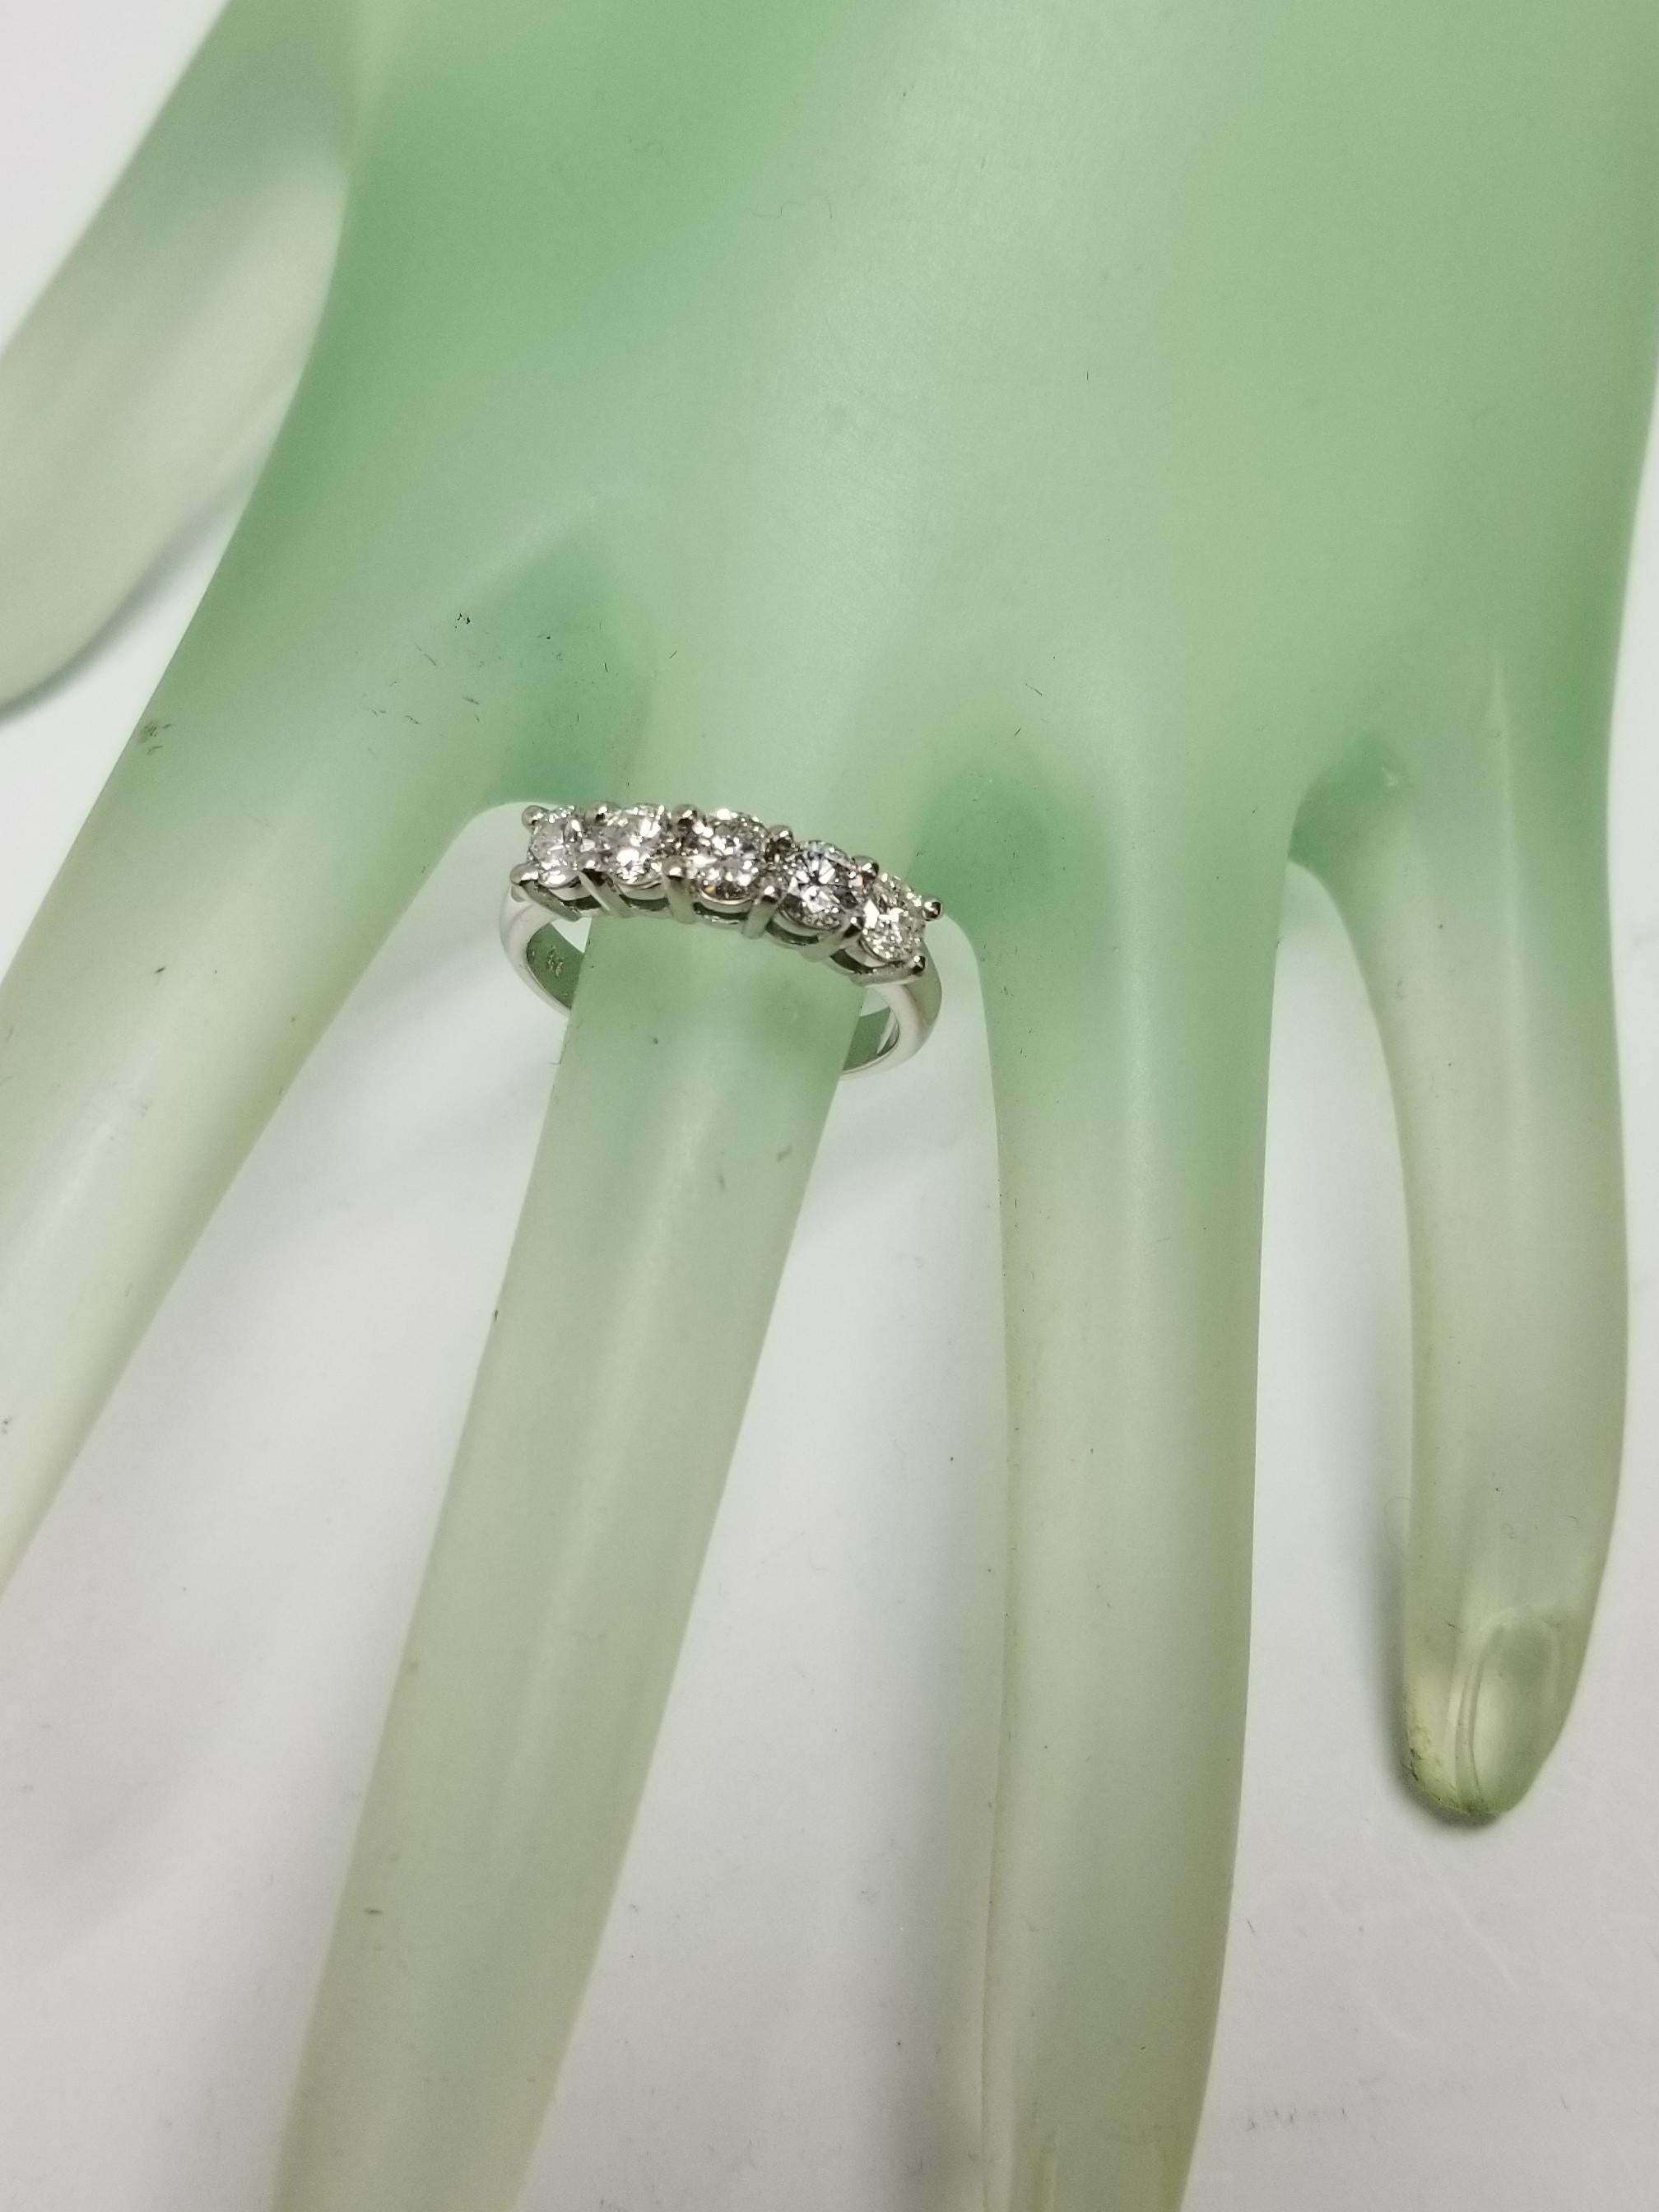 14 Karat 5-Stone Diamond Ring Weighing .95pts For Sale 1